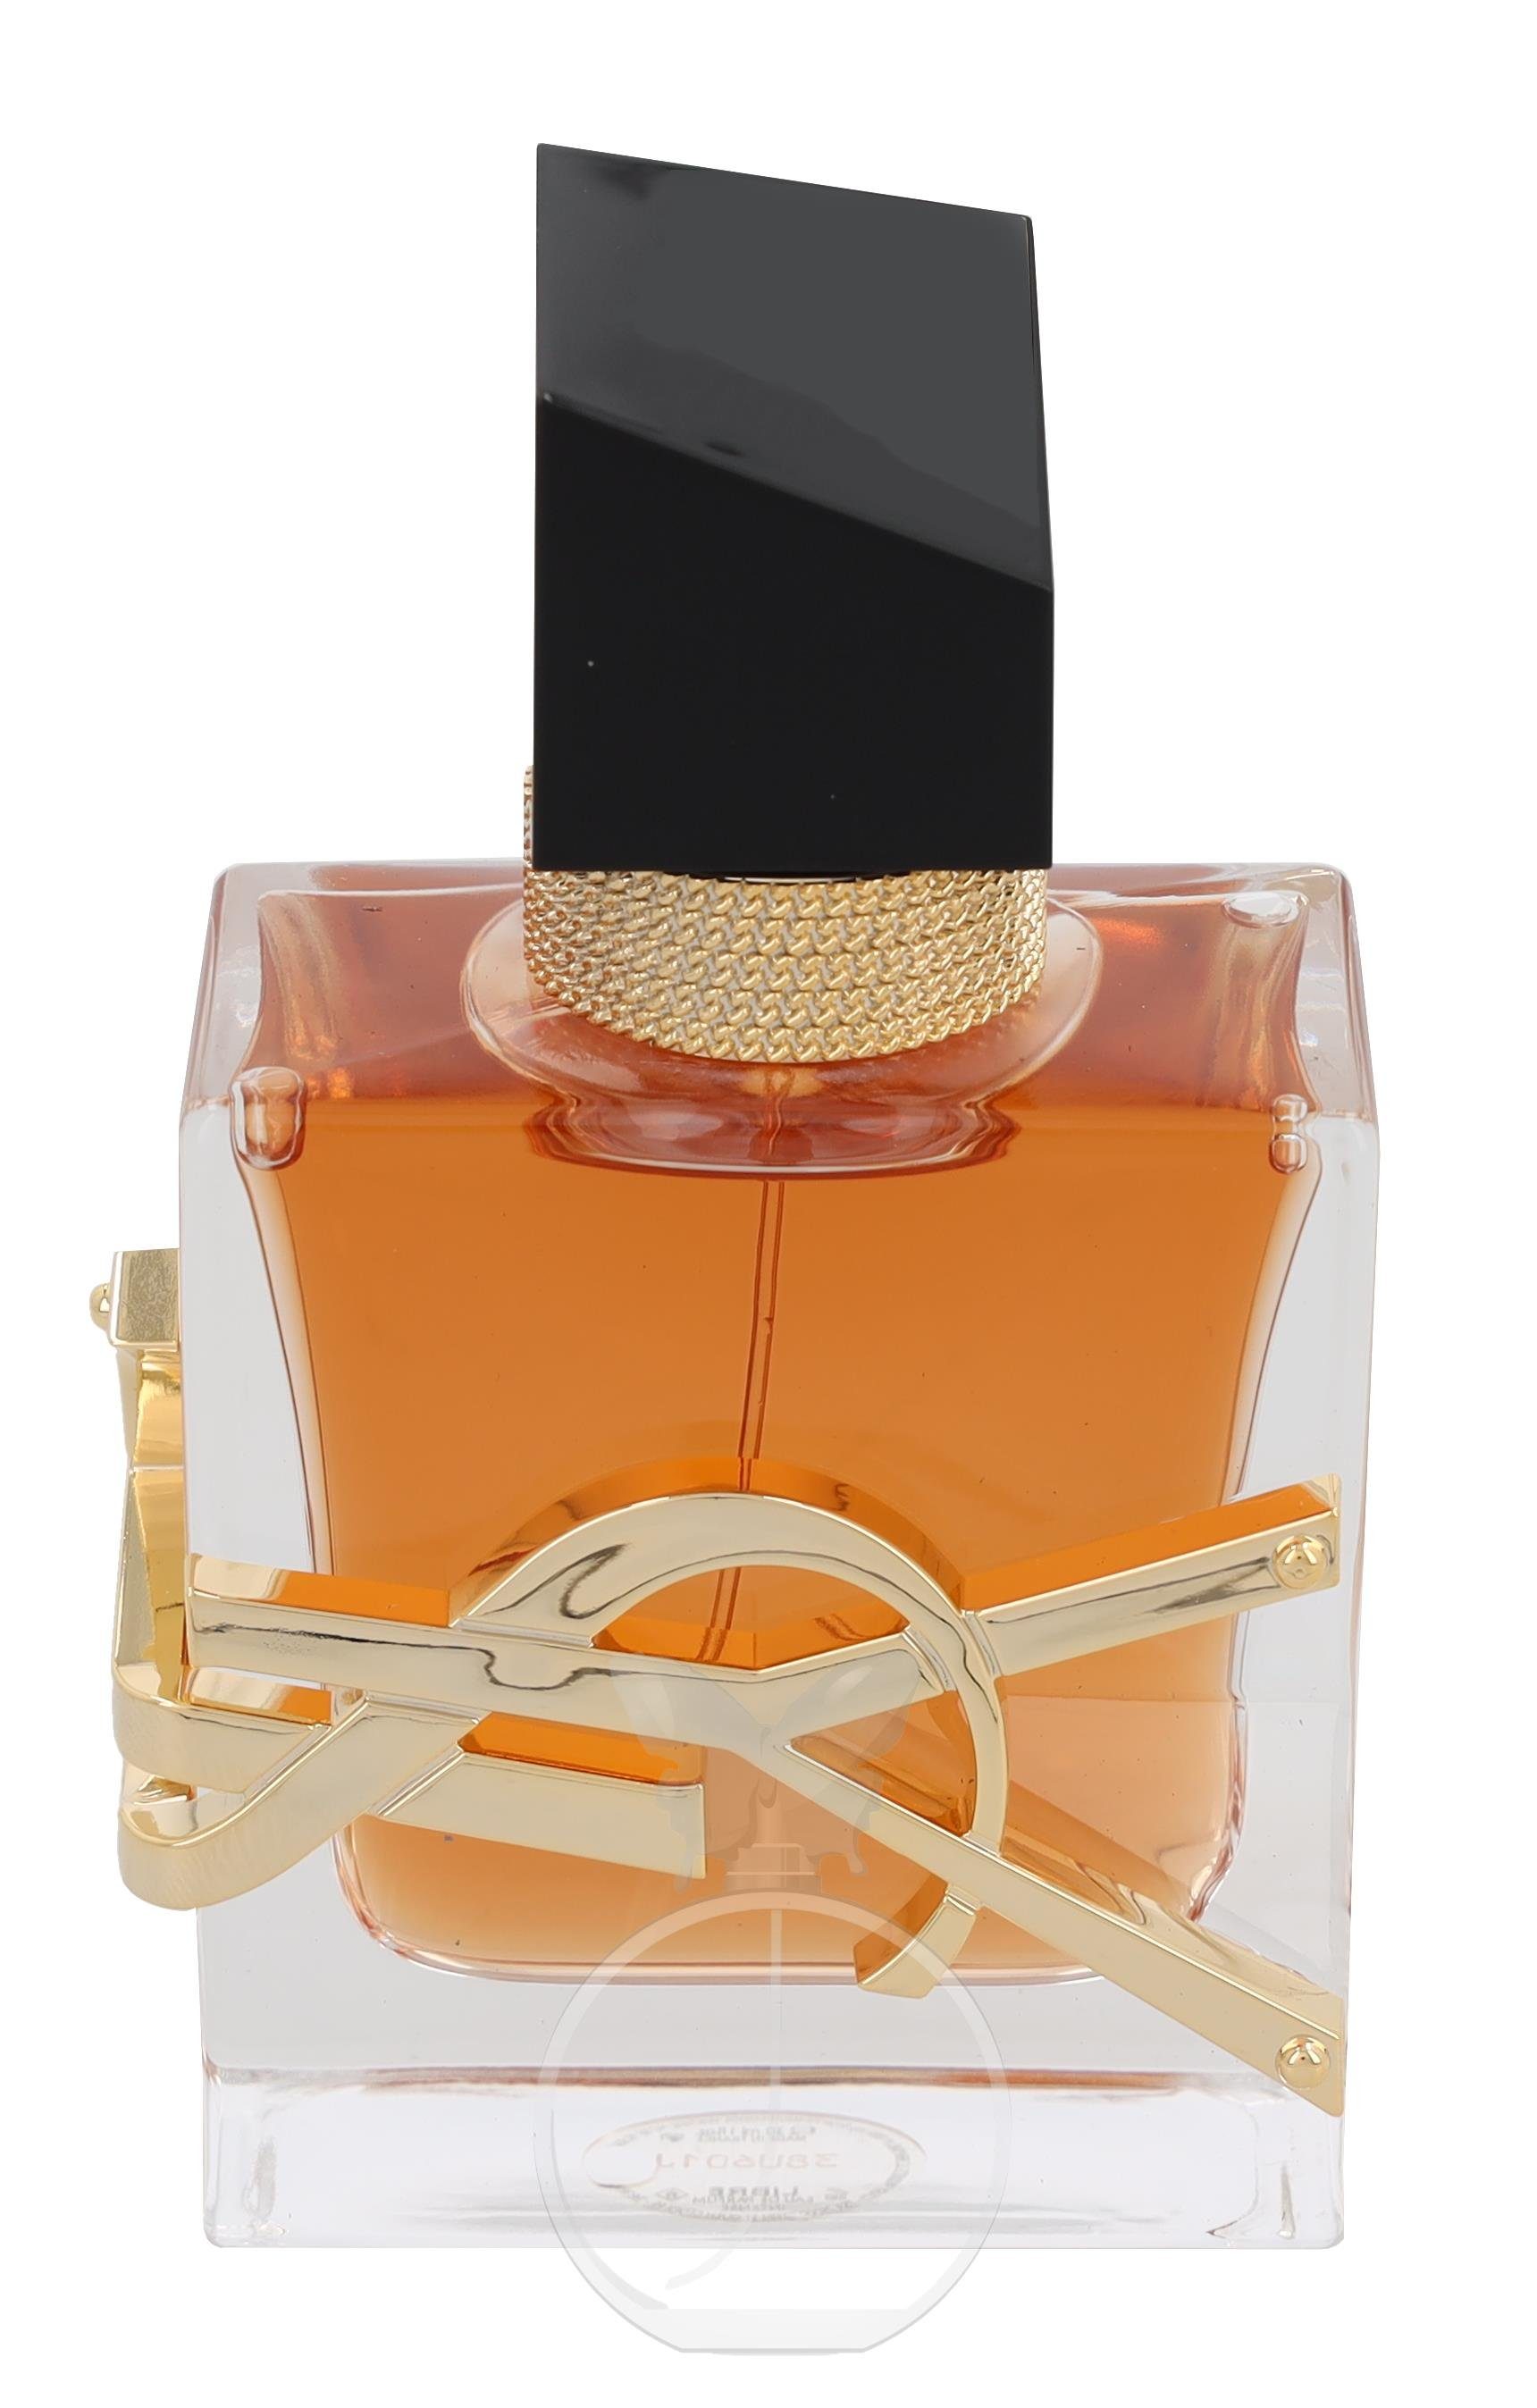 Saint Parfum YVES Parfum Intense LAURENT Laurent Eau SAINT Libre Eau de de Yves